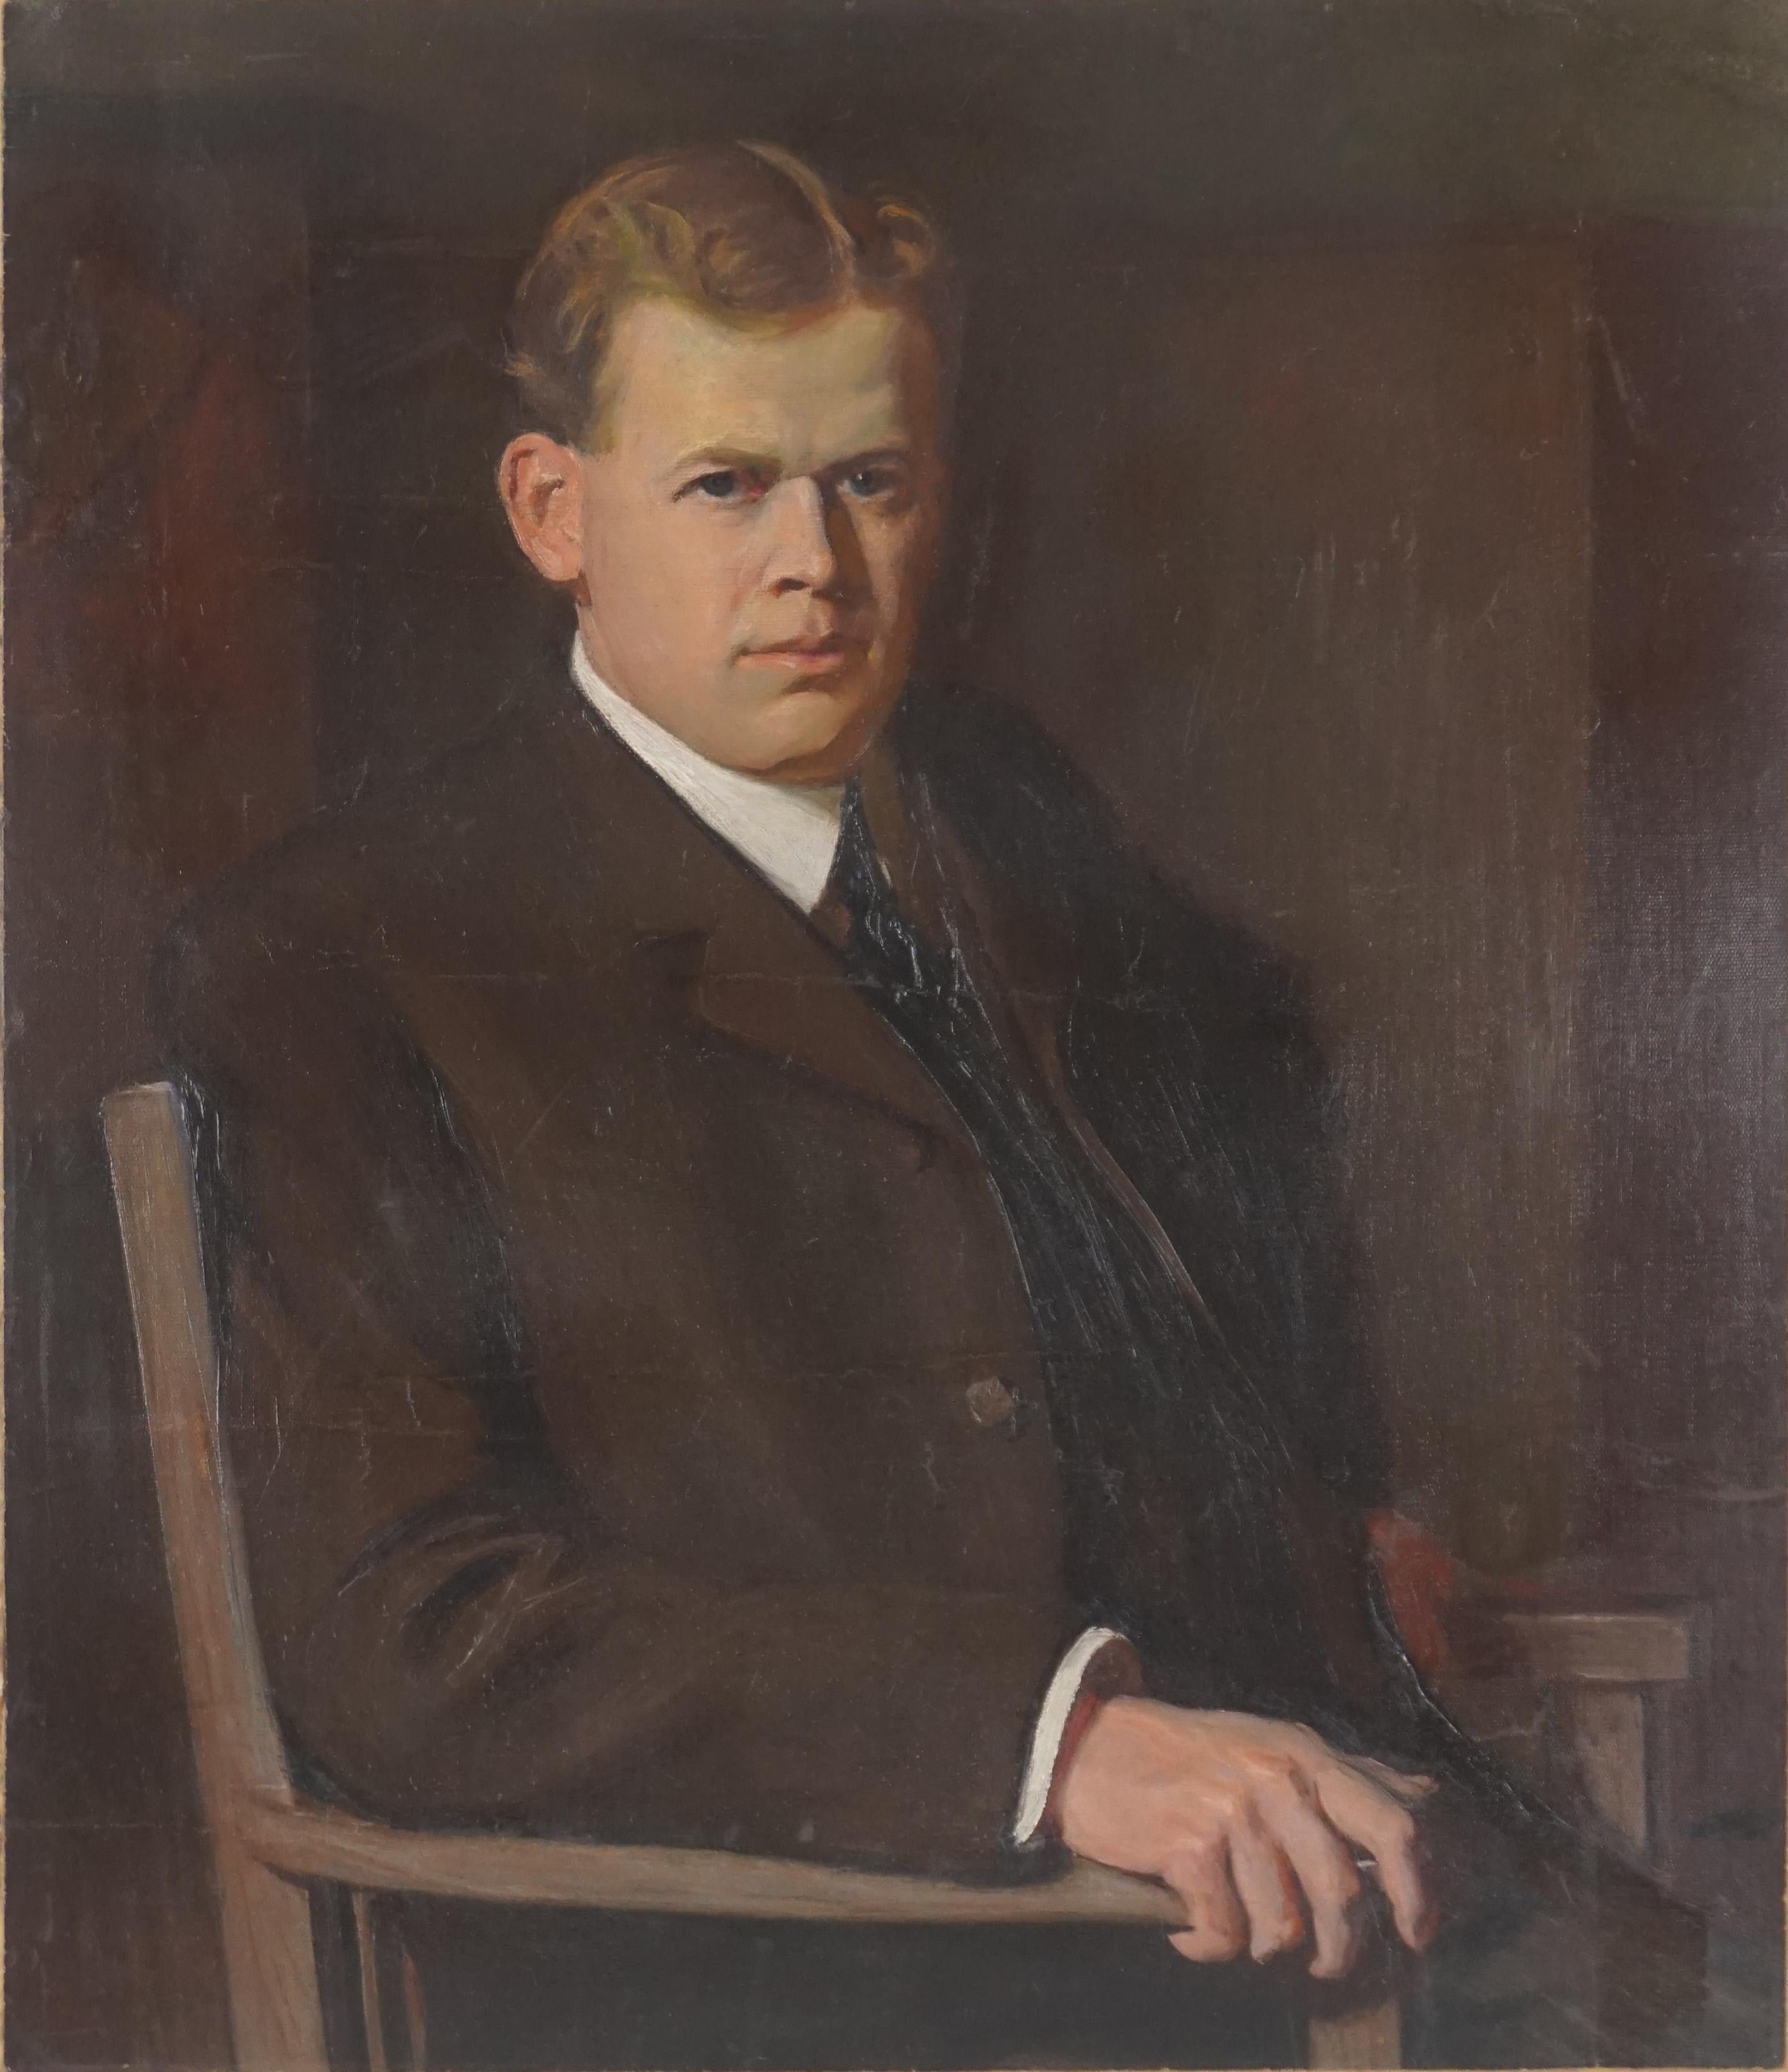 Robert Alexander Graham Portrait Painting – Wieness von Jack London aus dem frühen 20. Jahrhundert